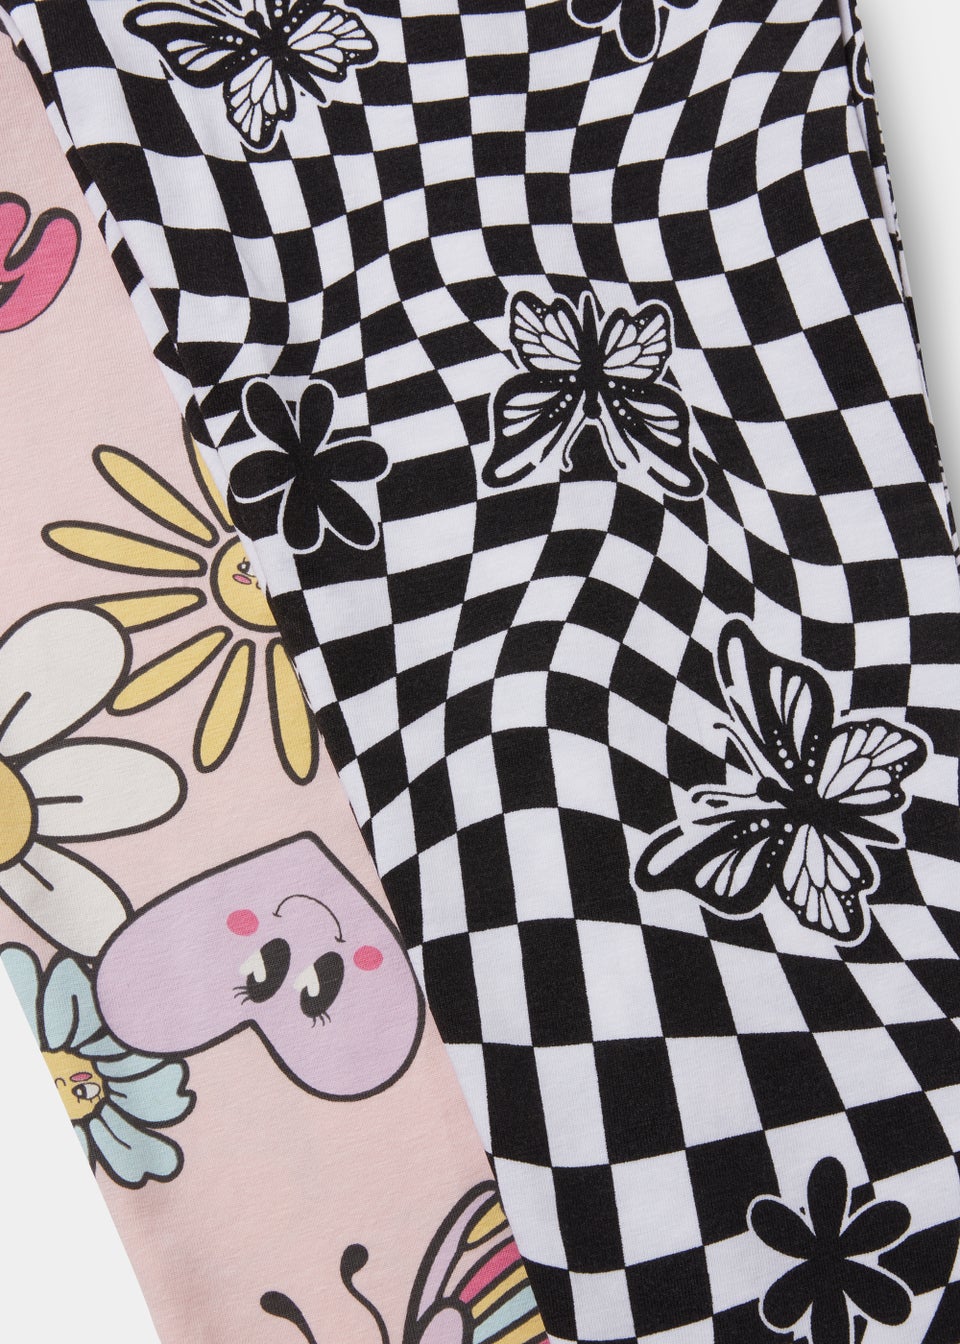 Girls 2 Pack Happy Soul & Floral Pyjama Sets (4-13yrs)